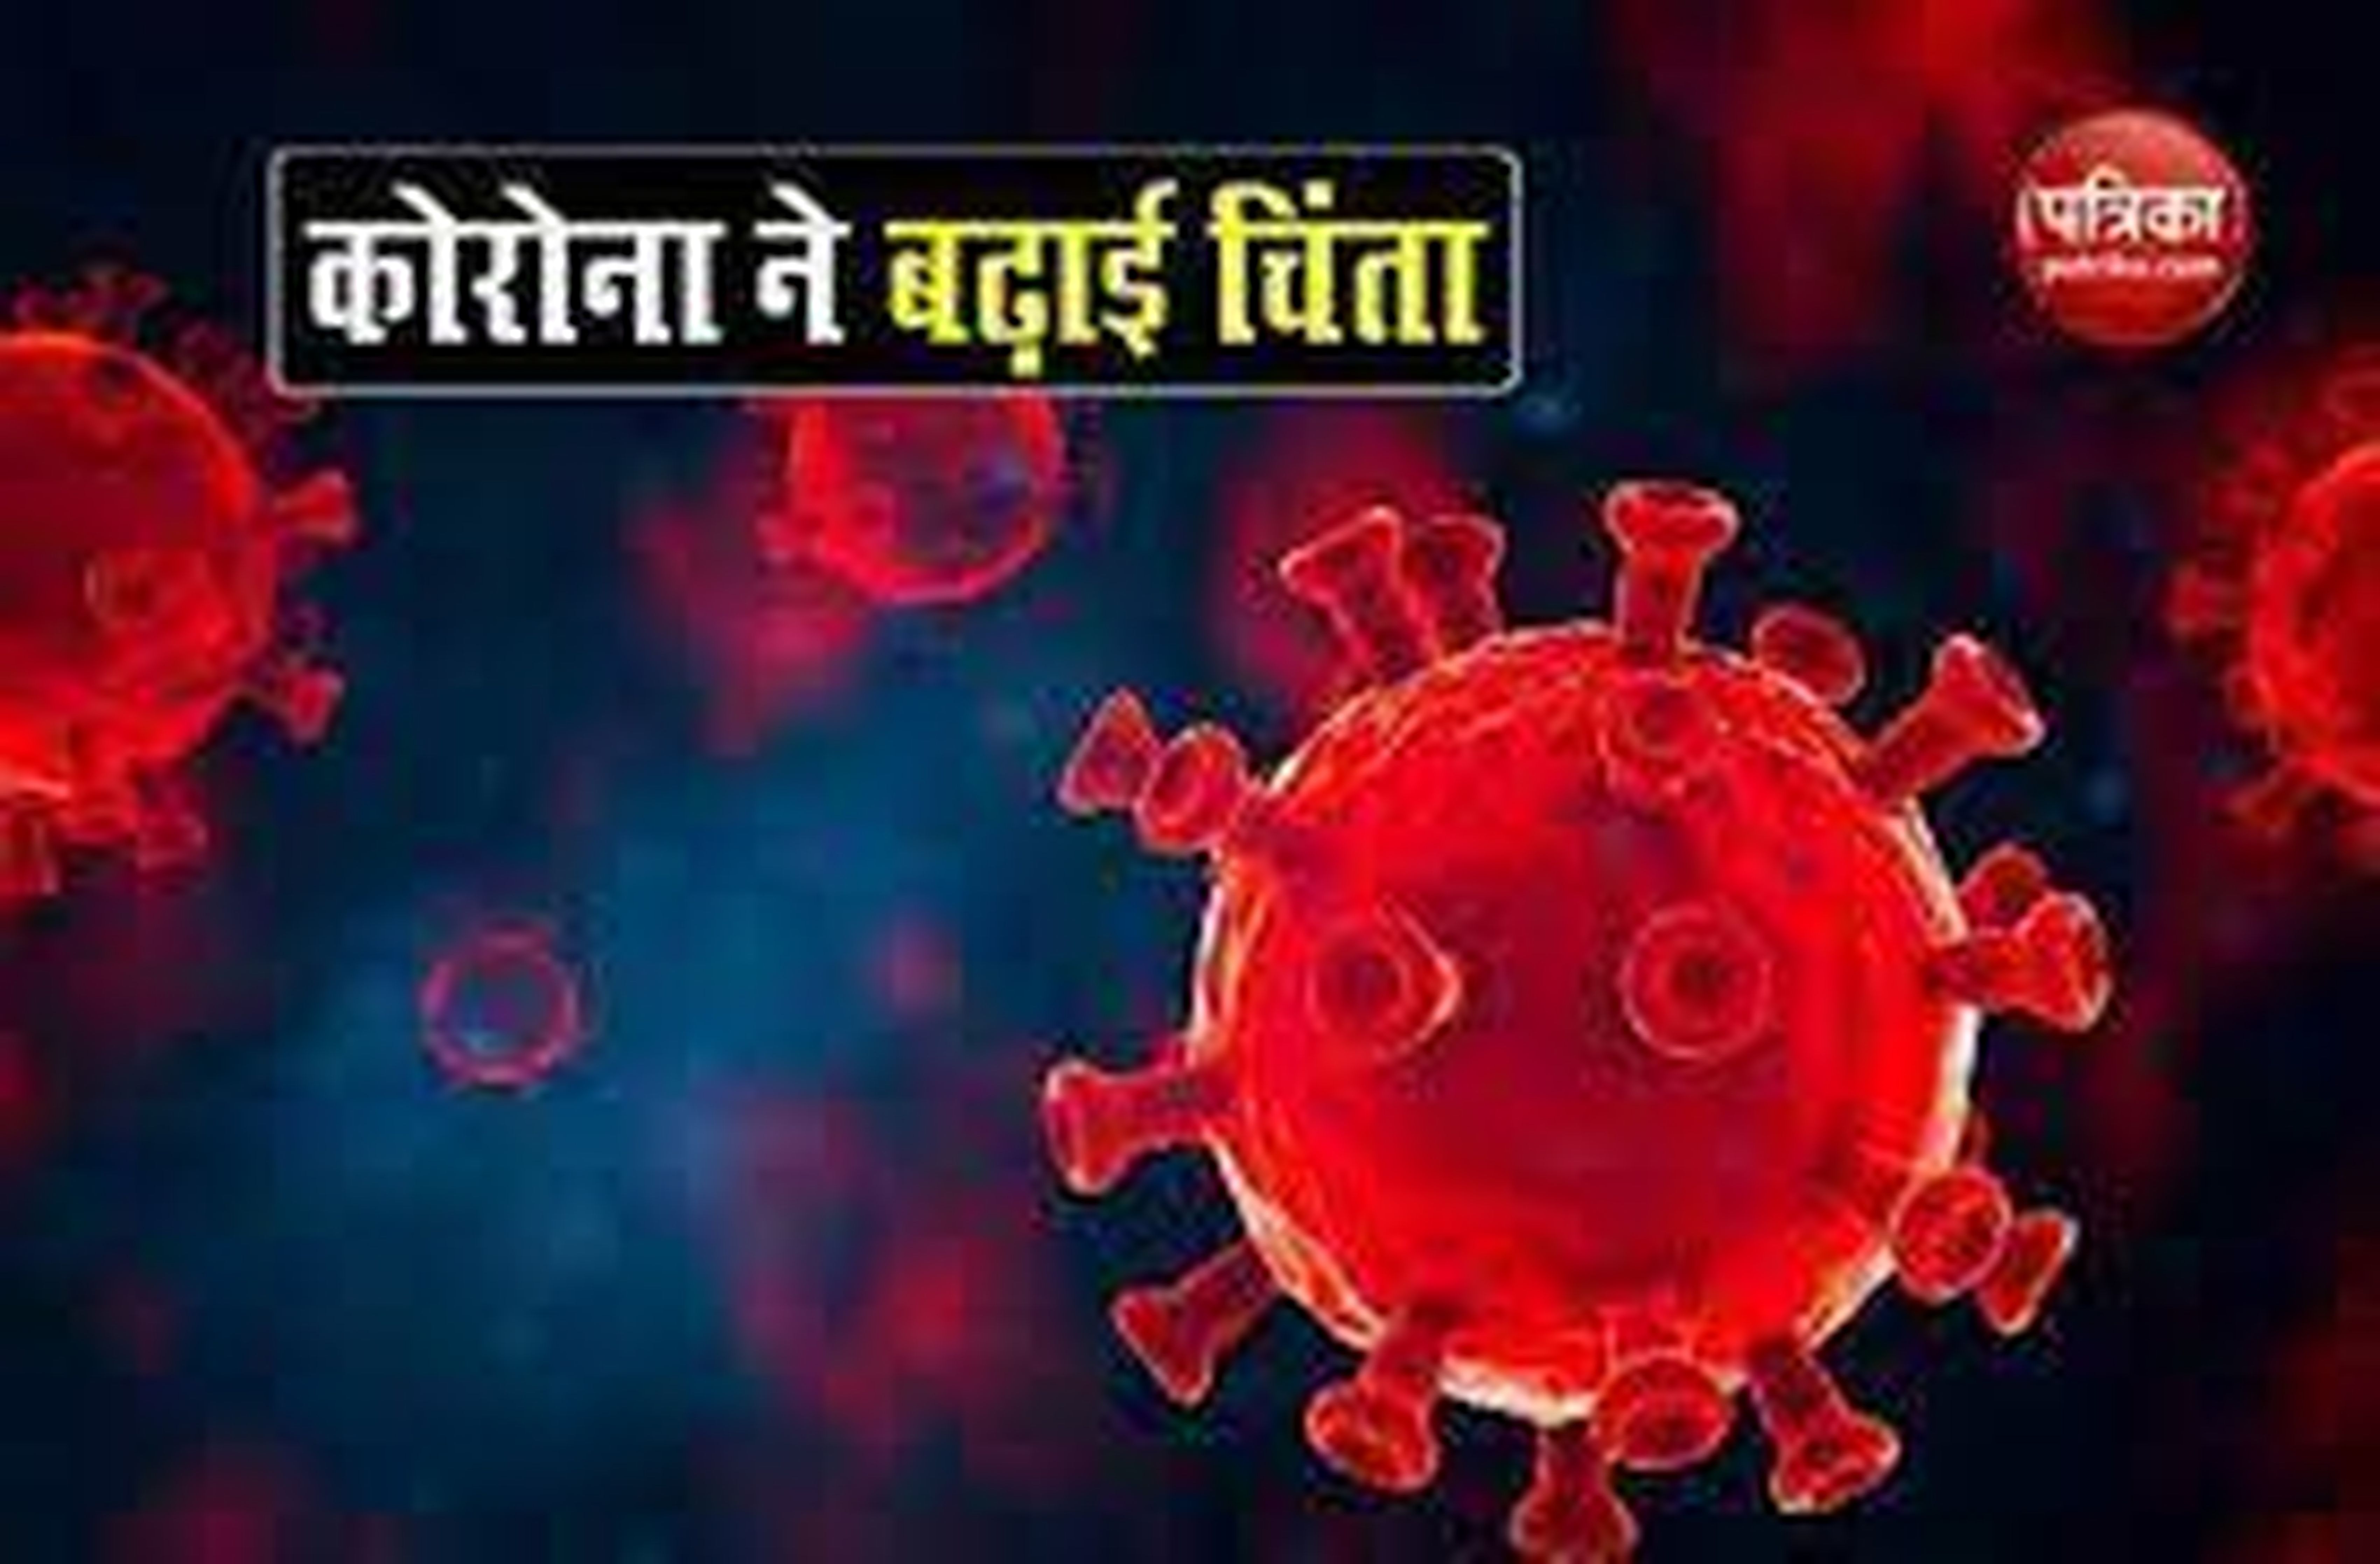 corona update:  जोधपुर में सवा छह संक्रमण दर के साथ 17 नए संक्रमित मिले